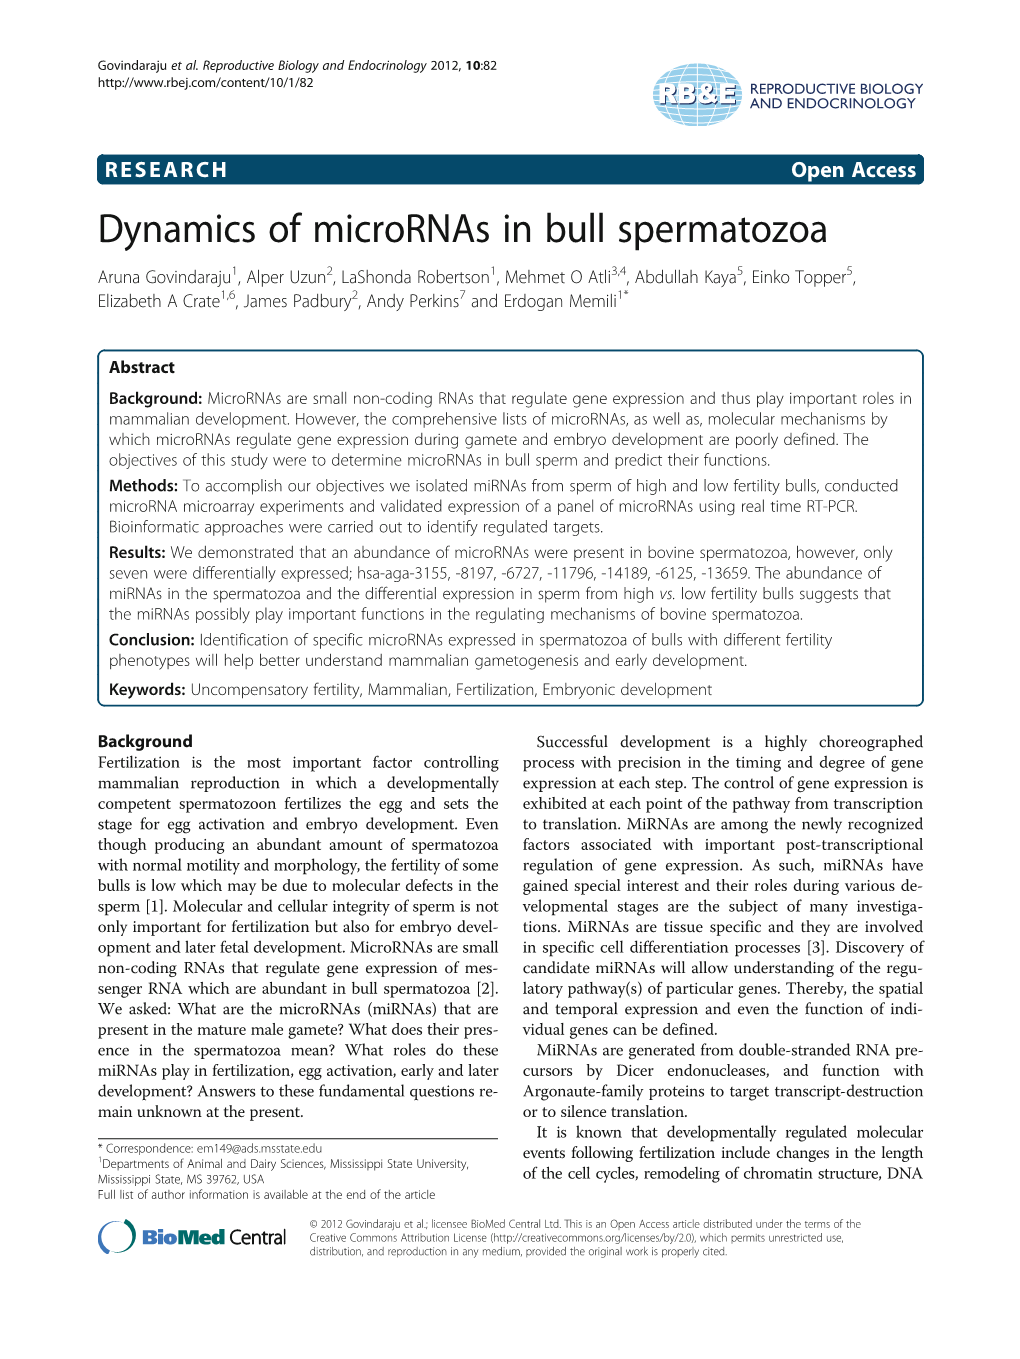 Dynamics of Micrornas in Bull Spermatozoa